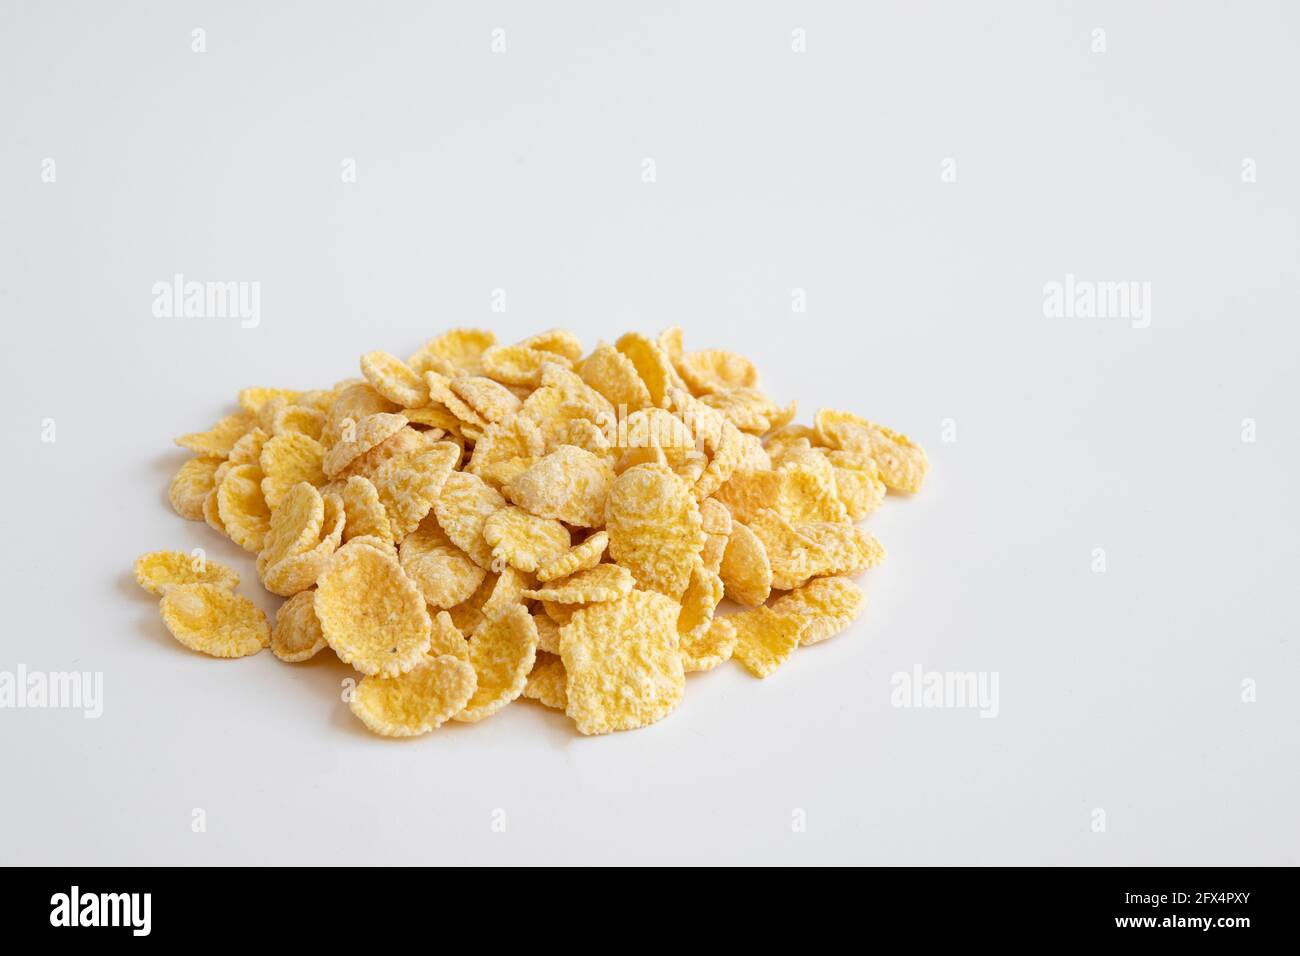 fiocchi di mais isolati su sfondo bianco, ingredienti alimentari, cereali di mais gialli per colazione, mucchio di fiocchi di mais ricoperti di zucchero tagliati, vista laterale Foto Stock